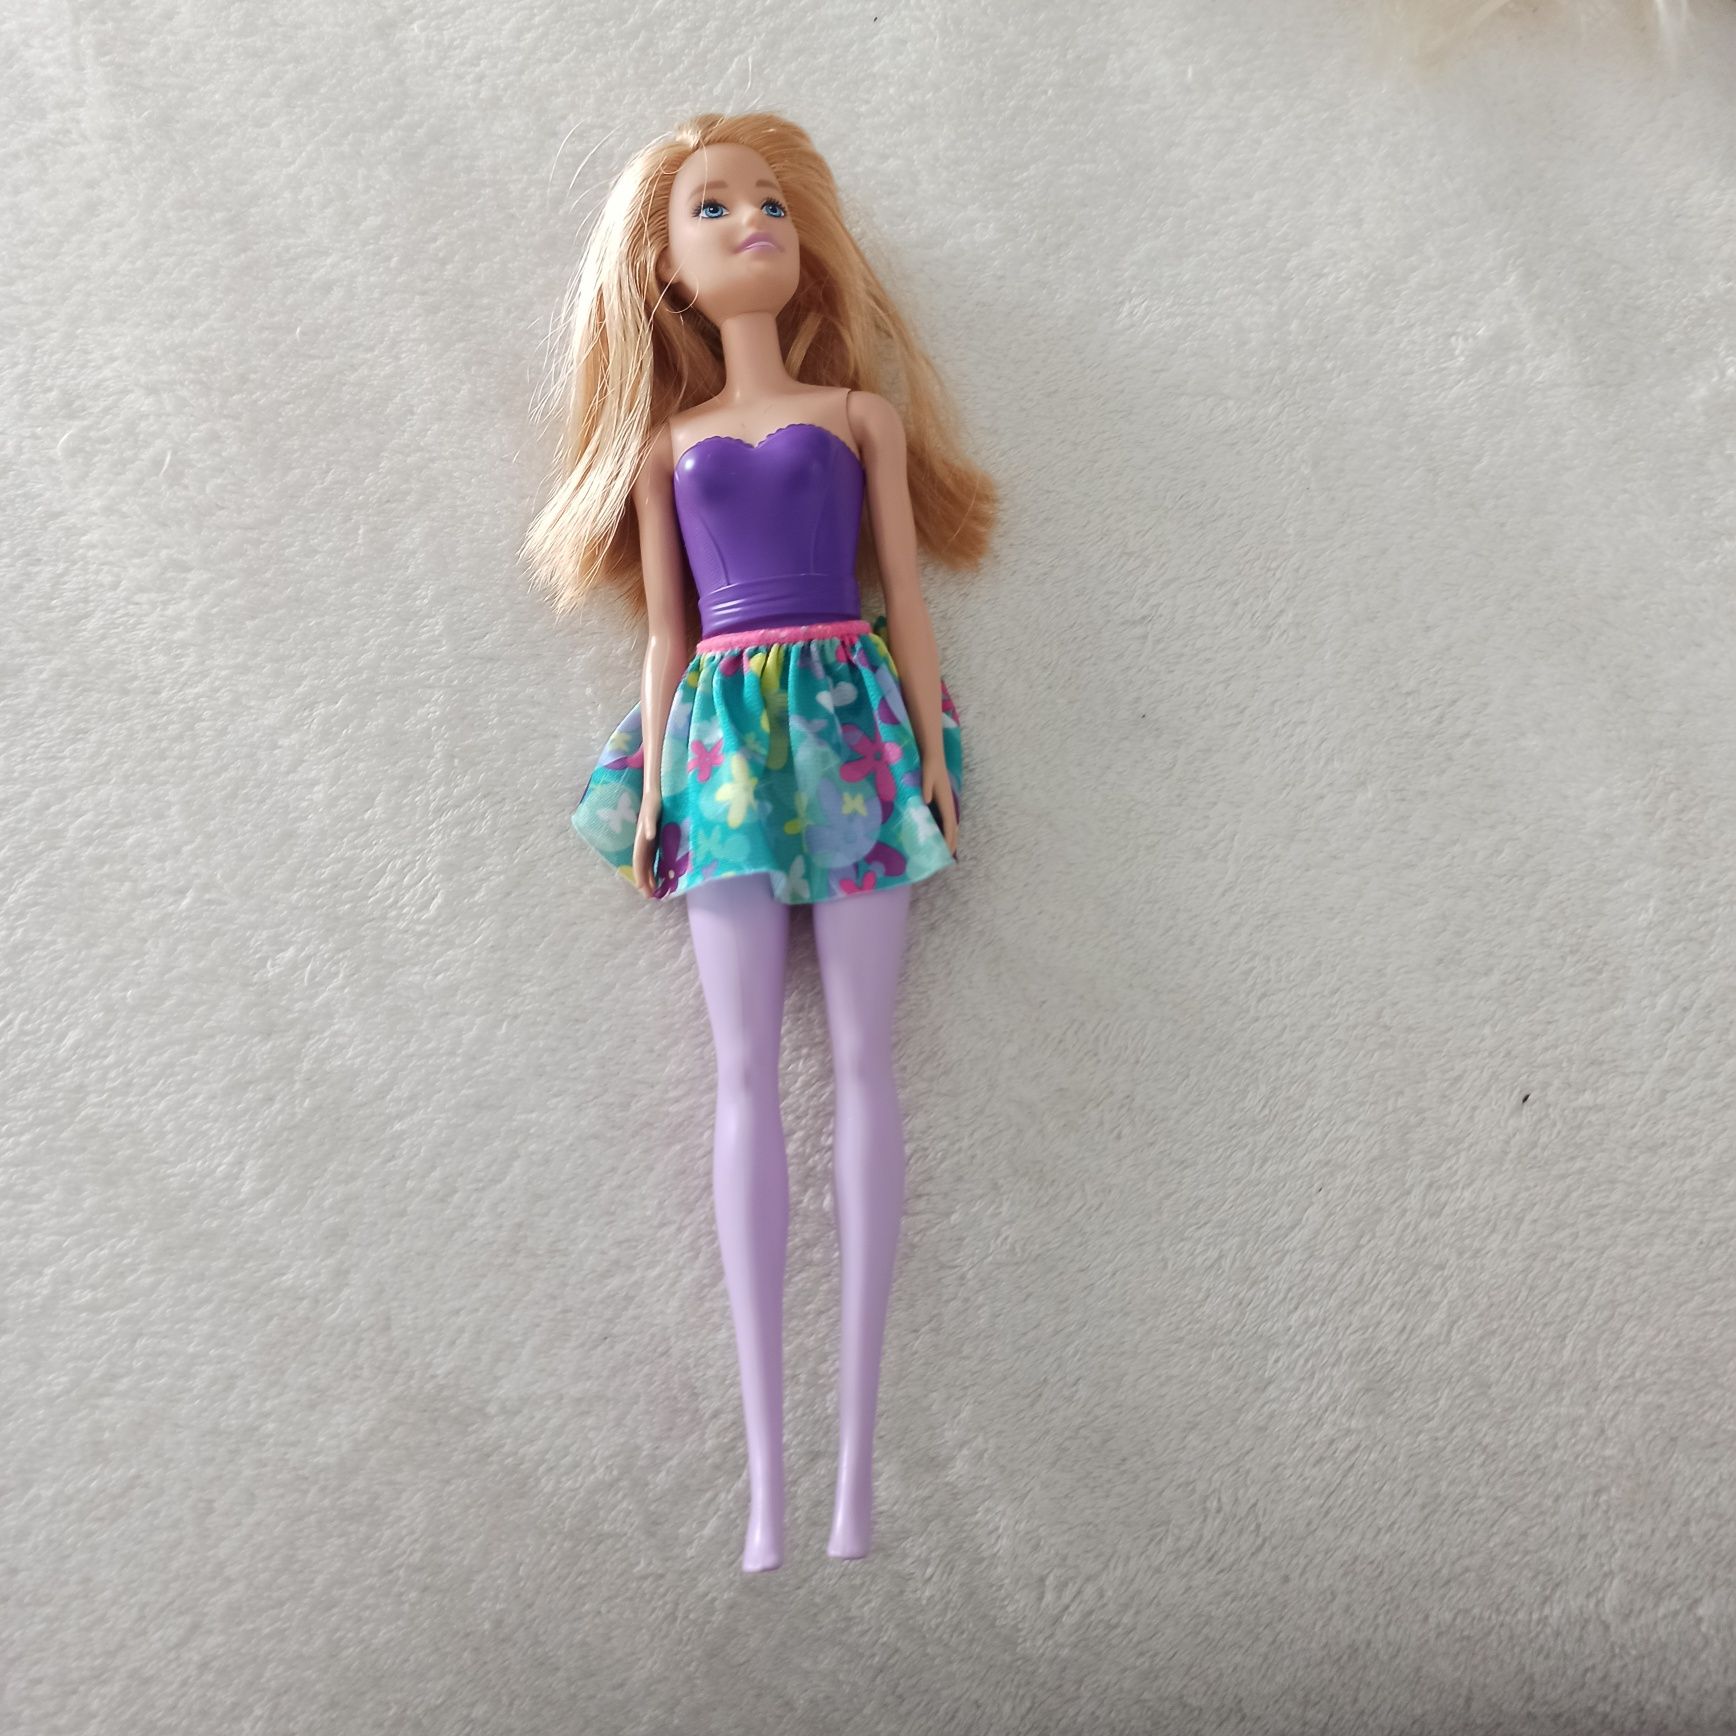 Boneca Barbie com pouco uso